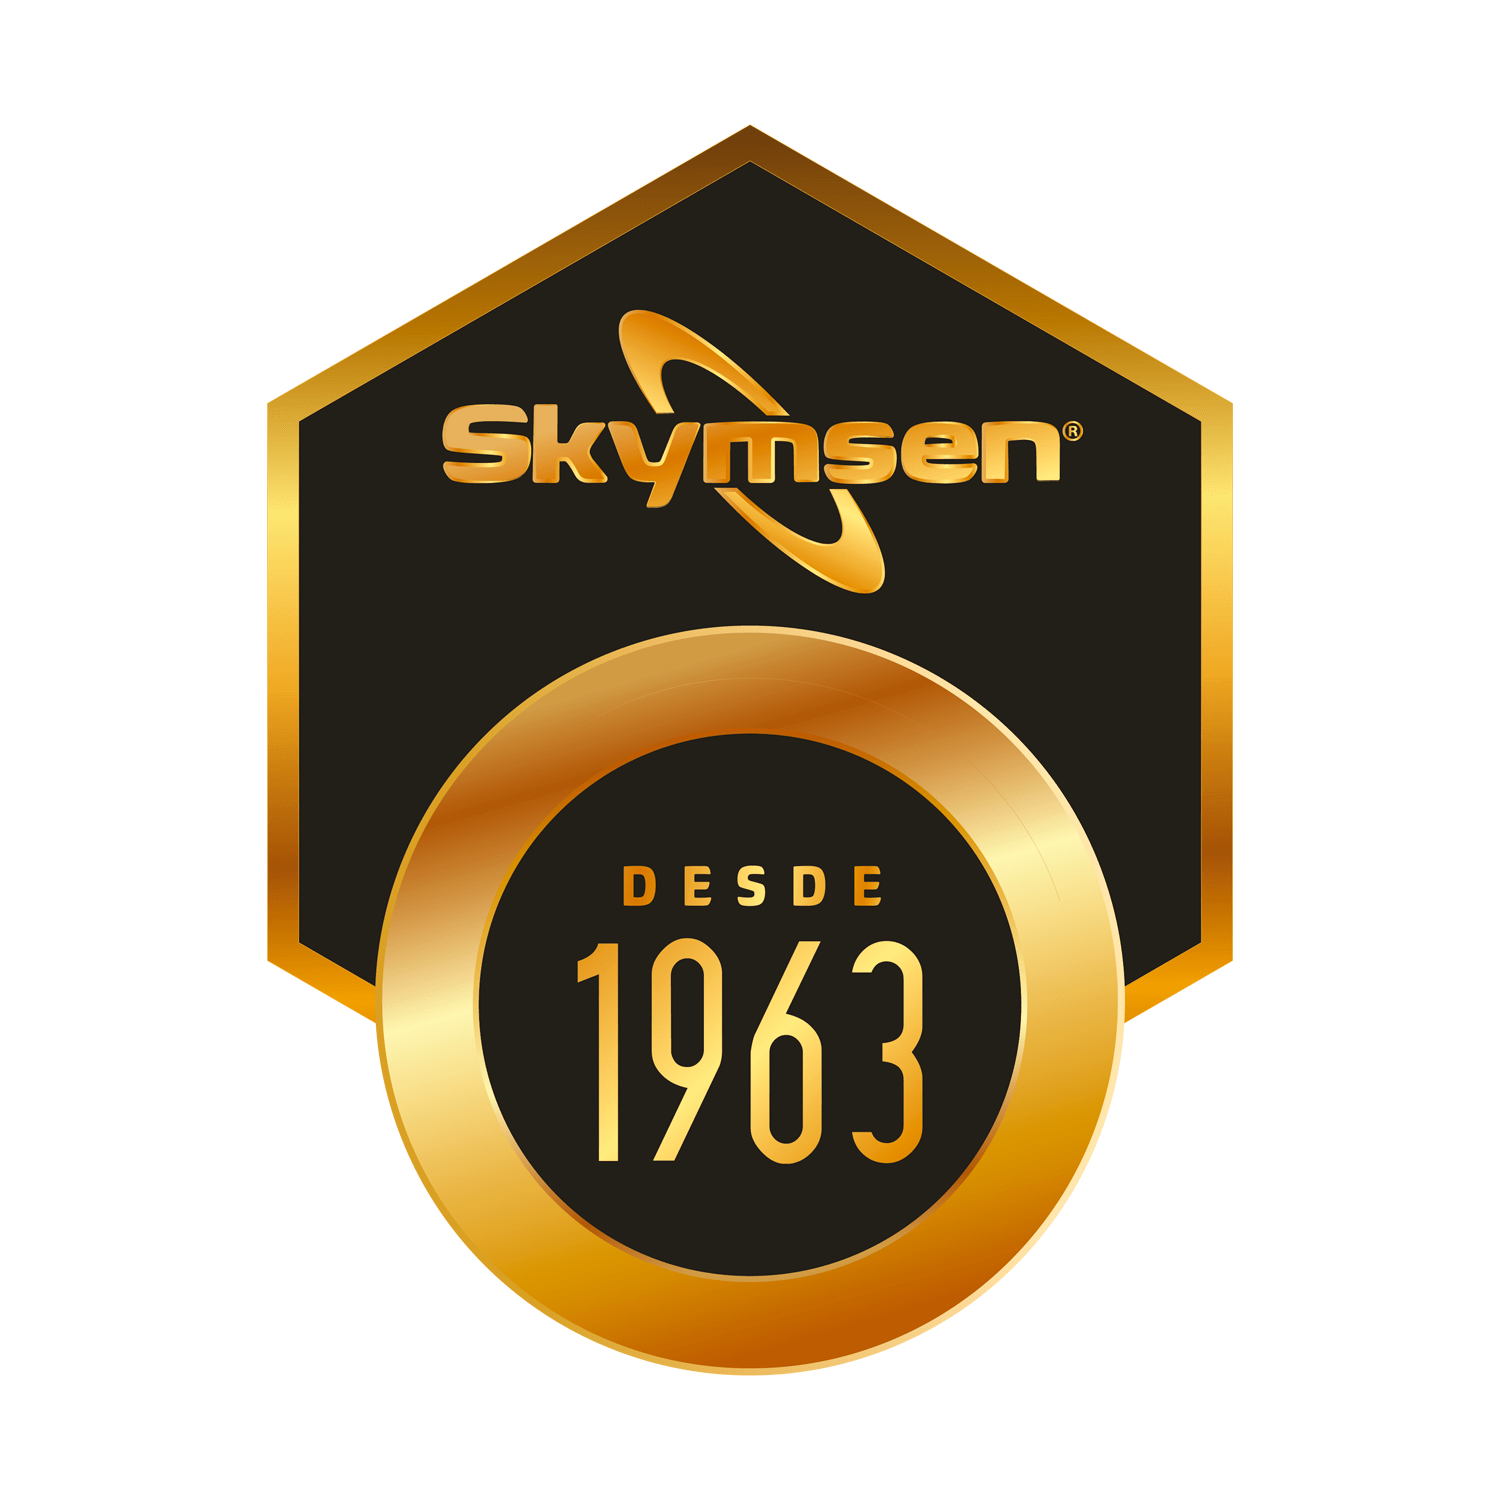 Skymsen desde 1963 logo y garantia